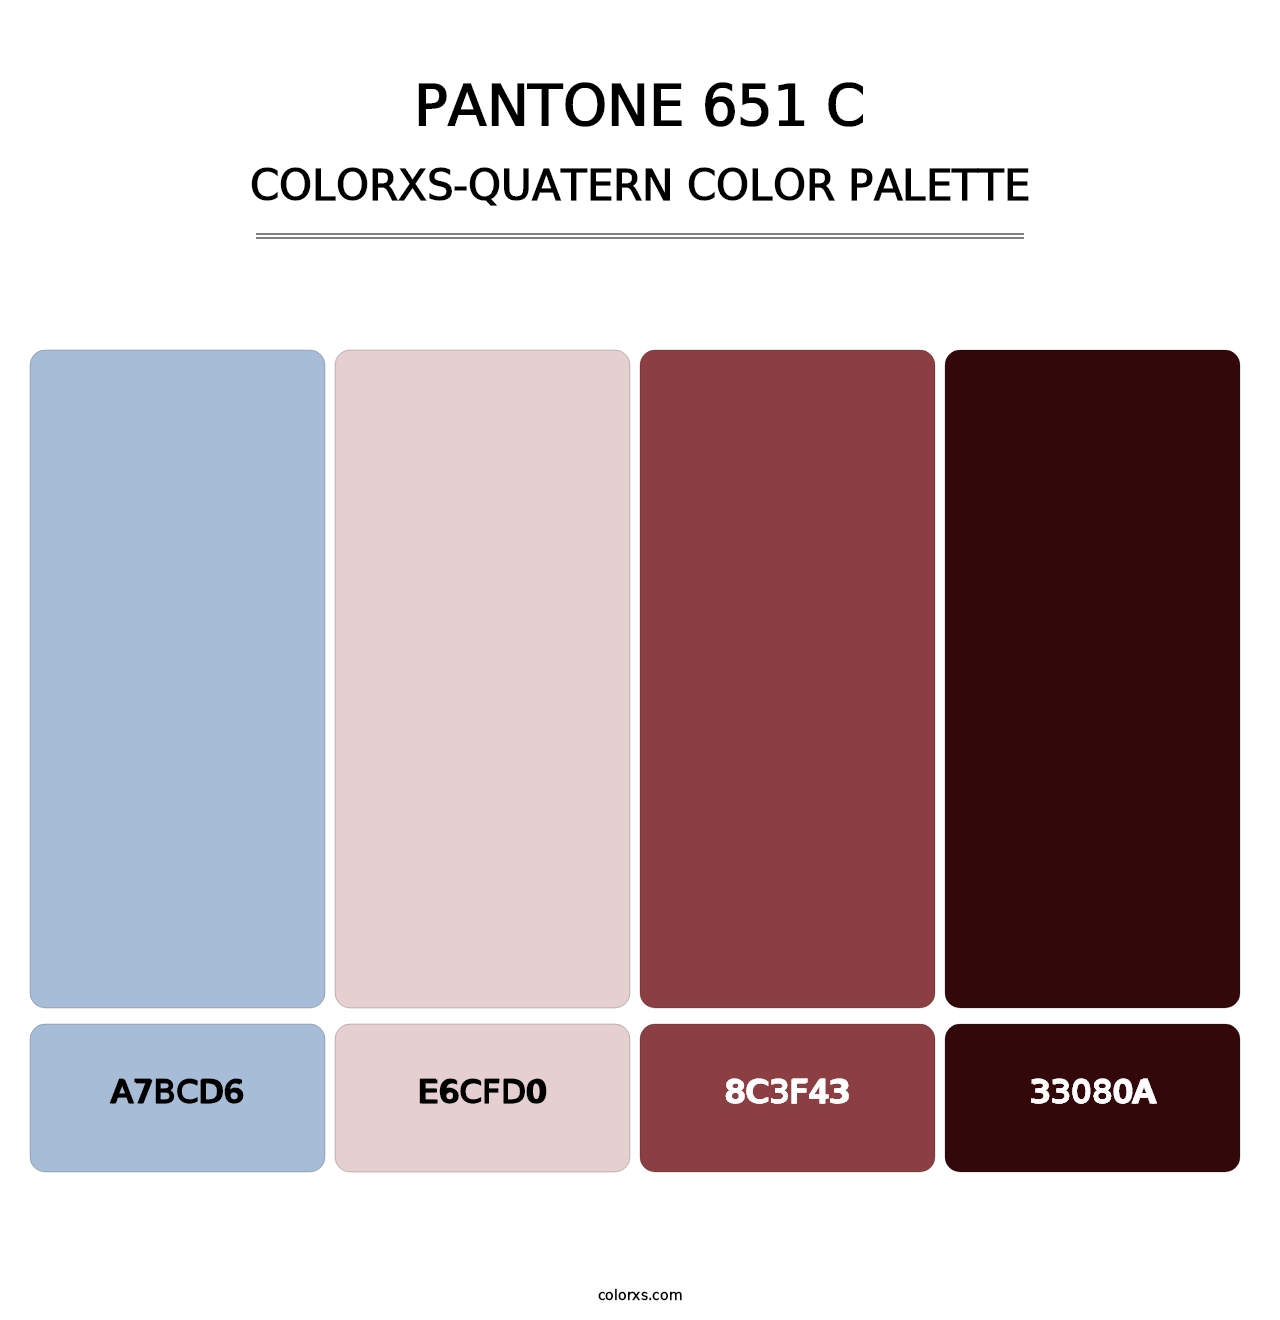 PANTONE 651 C - Colorxs Quatern Palette